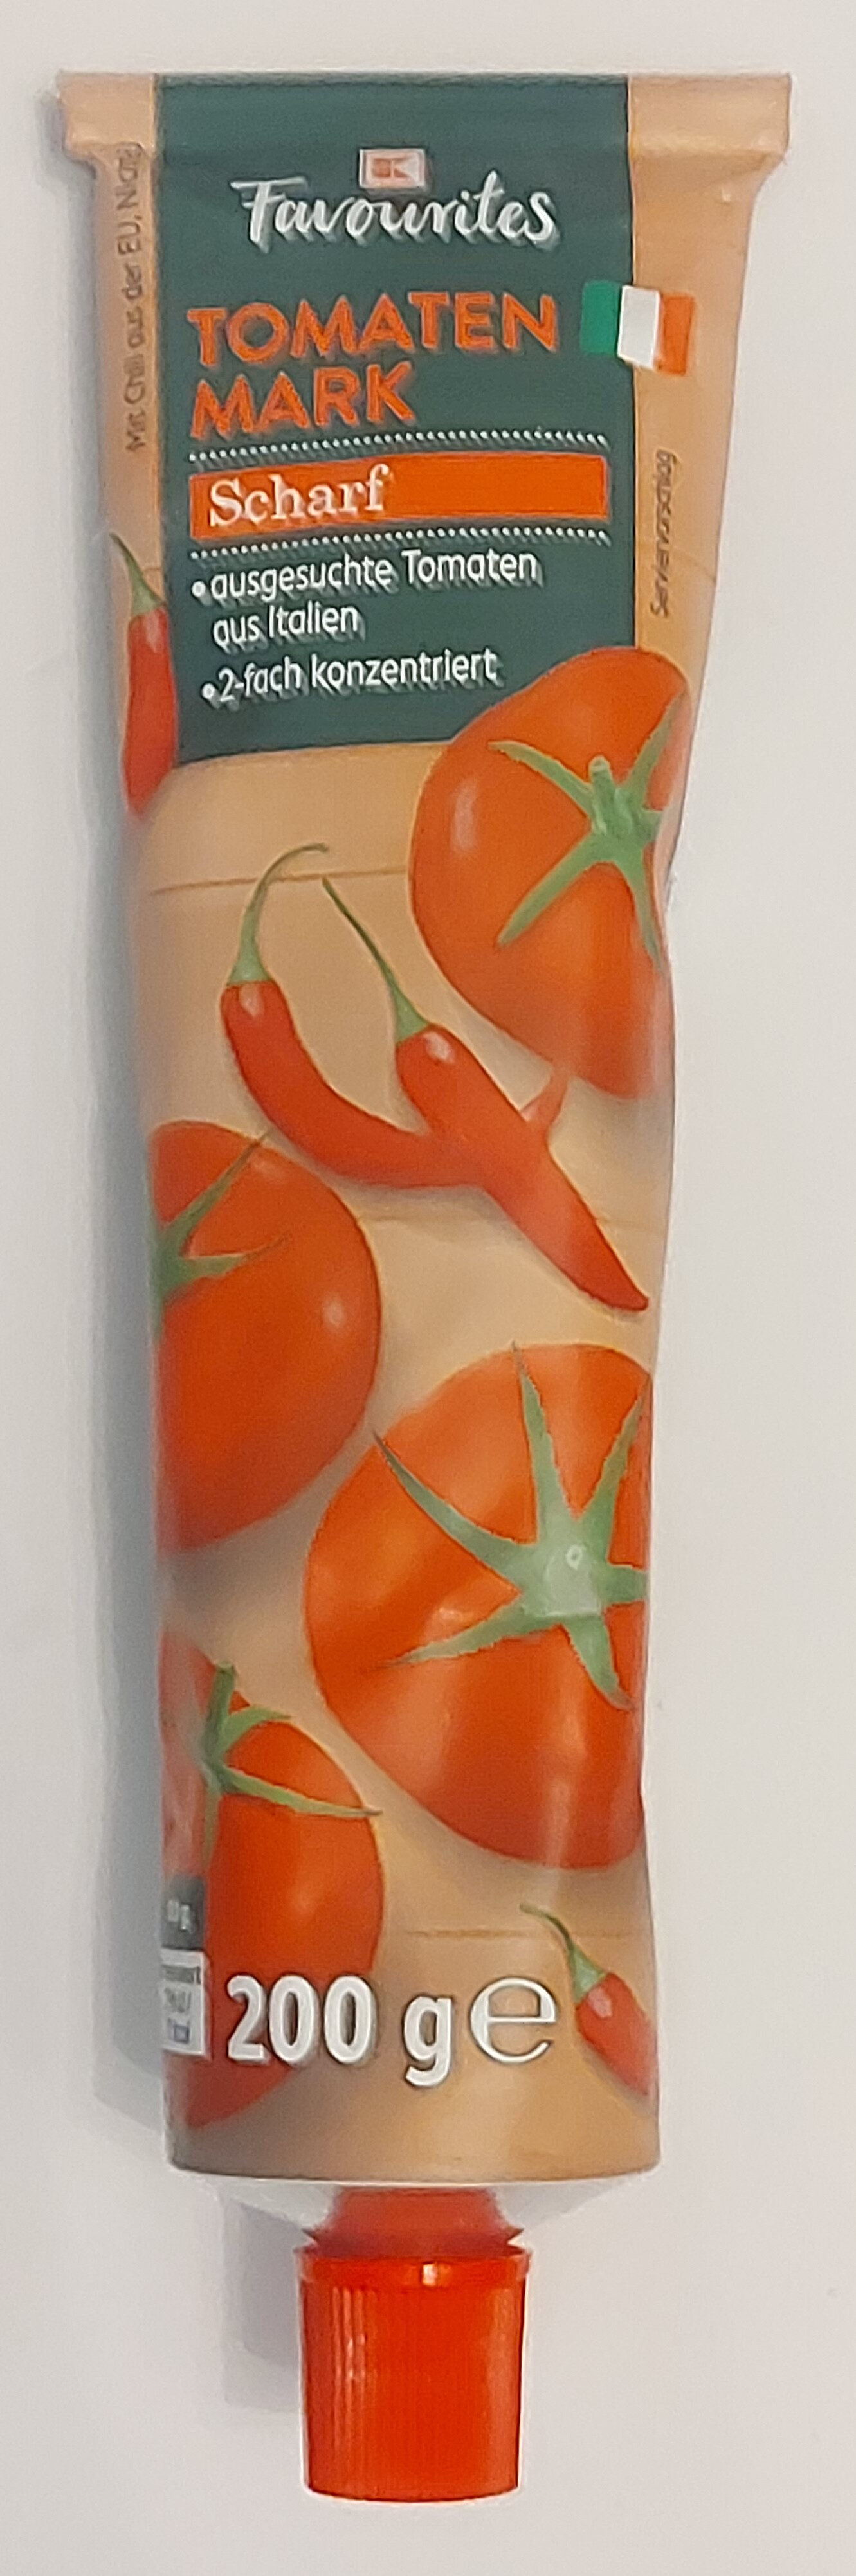 Tomaten Mark Scharf 2-fach konzentriert - Produit